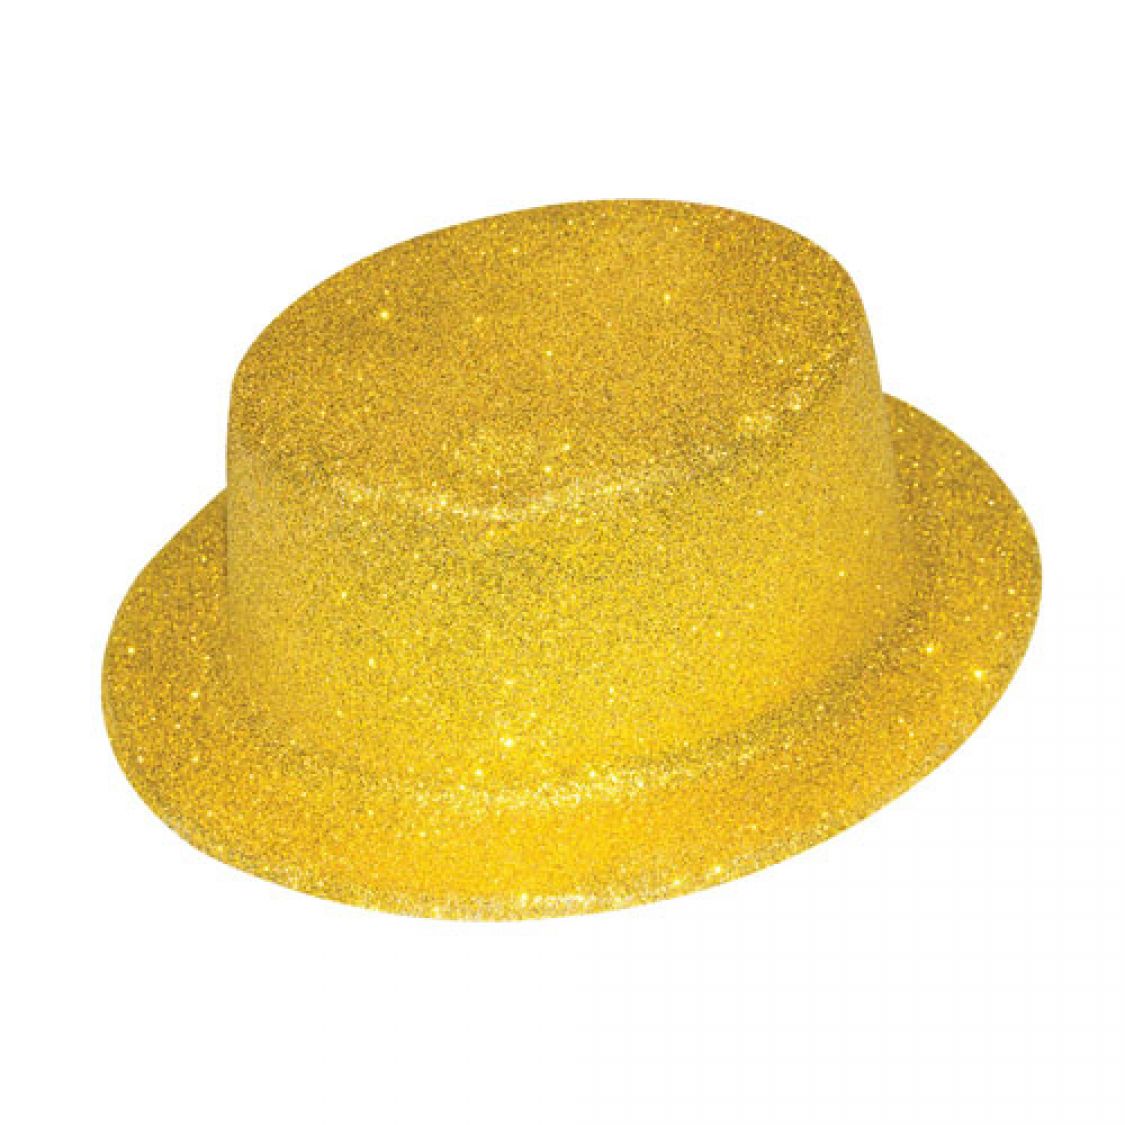 Chapeau haut de forme à paillettes - Doré ou argenté